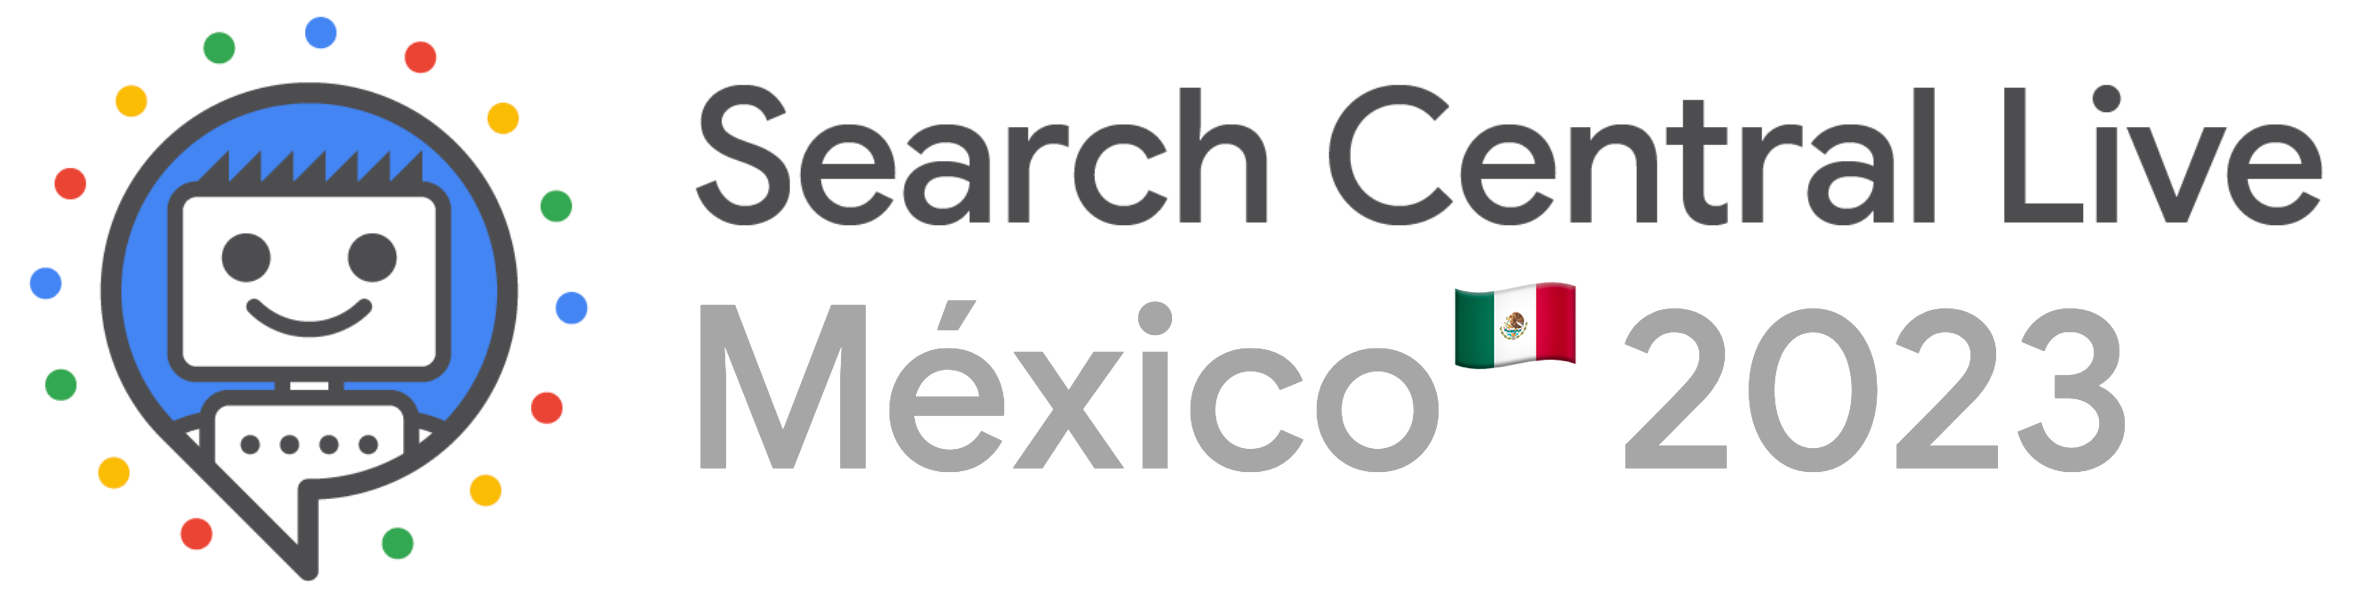 Search Central Live Ciudad de Mexico logo